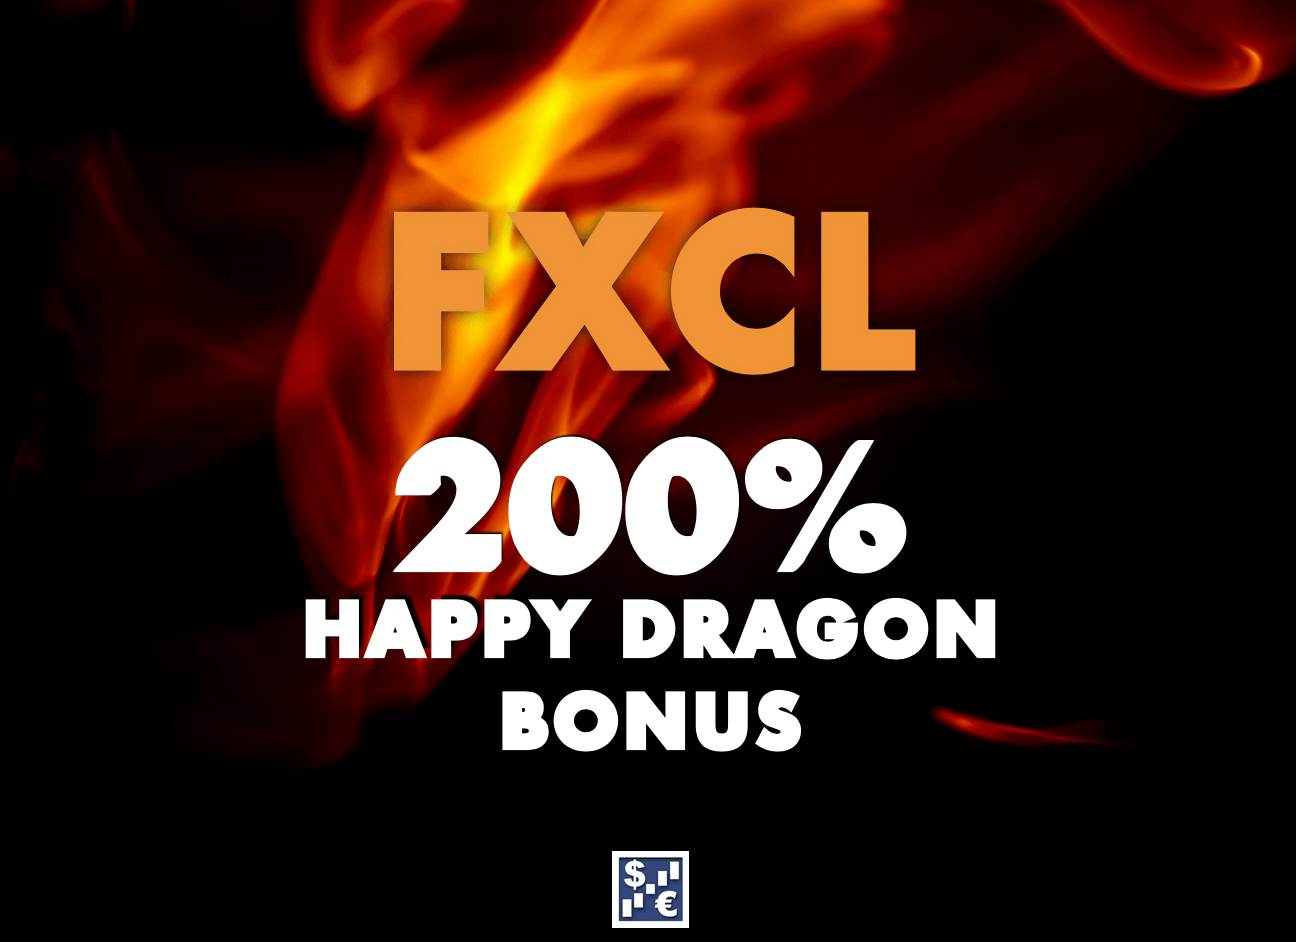 FXCL 200% Happy Dragon Bonus